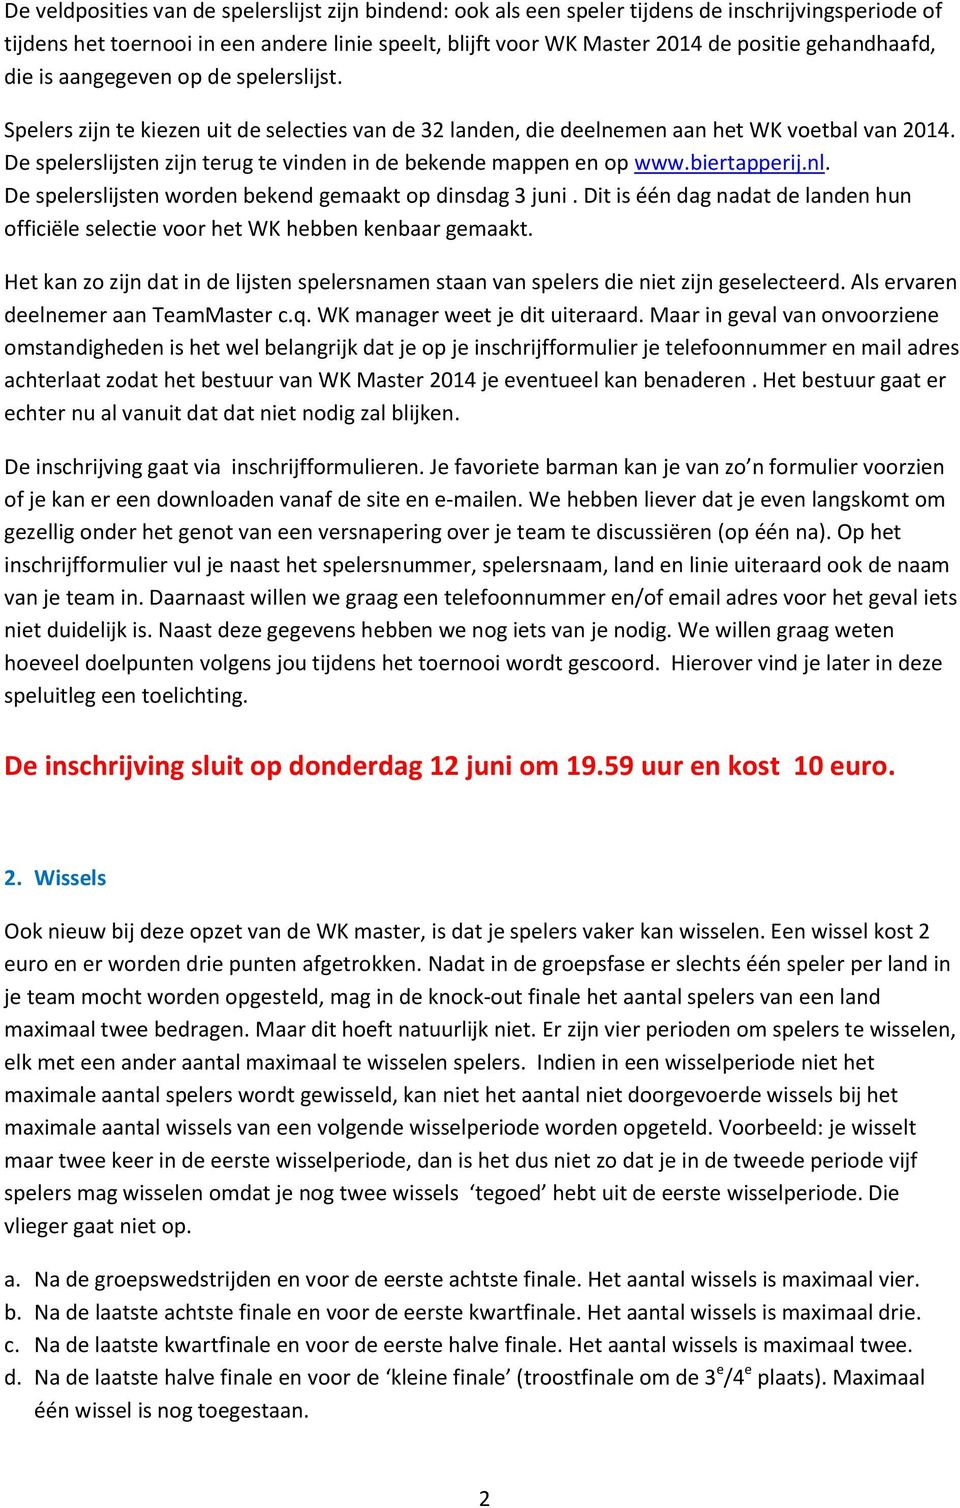 De spelerslijsten zijn terug te vinden in de bekende mappen en op www.biertapperij.nl. De spelerslijsten worden bekend gemaakt op dinsdag 3 juni.